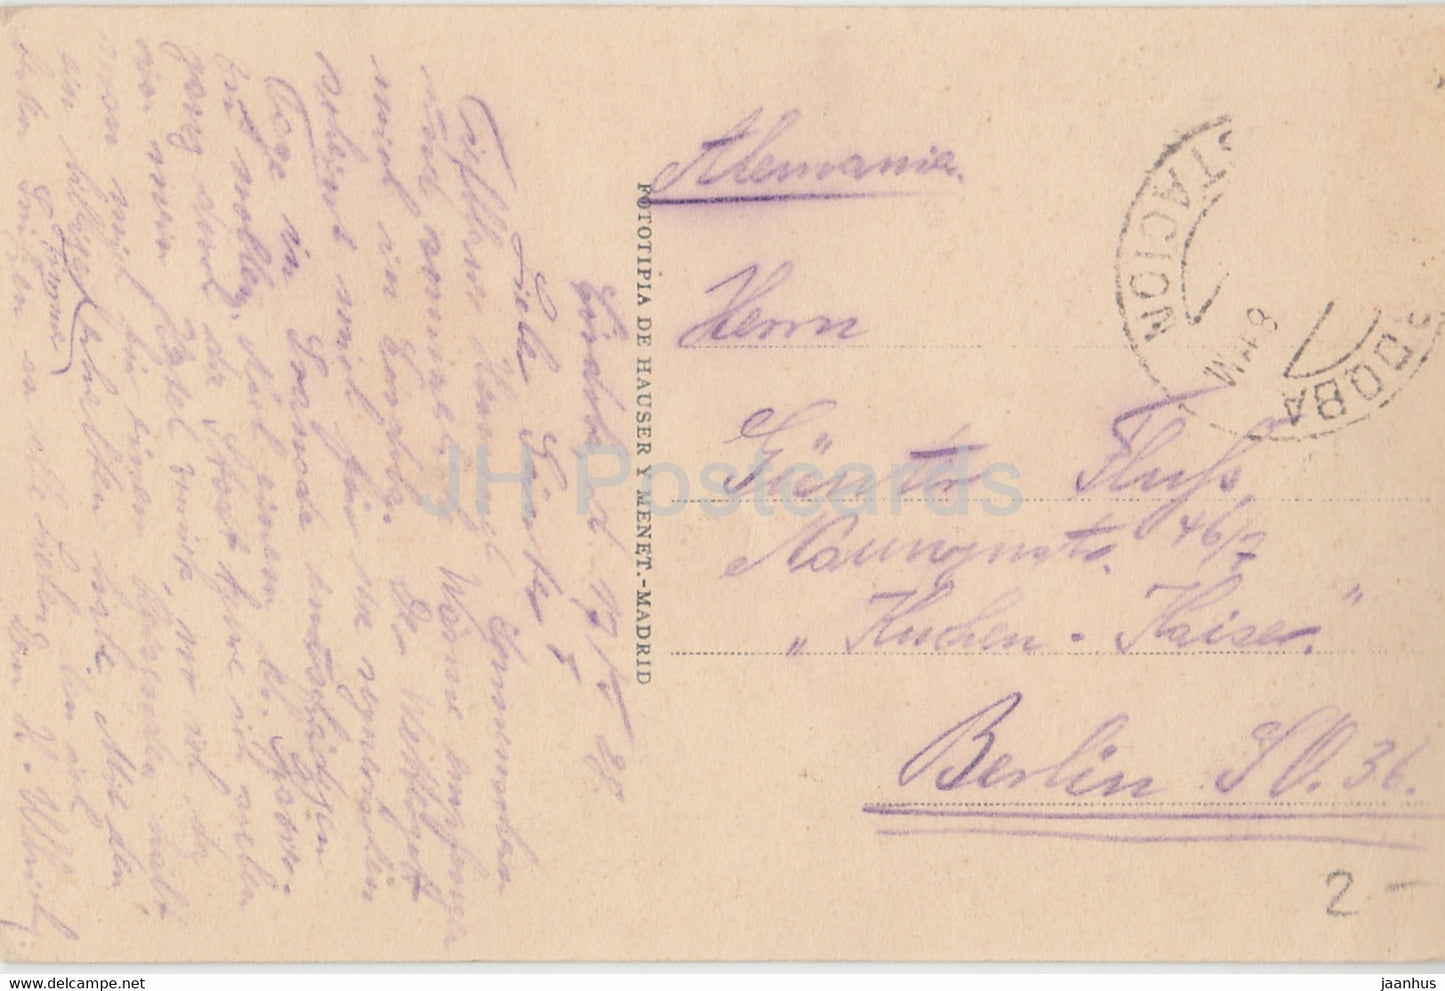 Cordoue - Torre de Carraola y Puente Romano - carte postale ancienne - 1928 - Espagne - utilisé